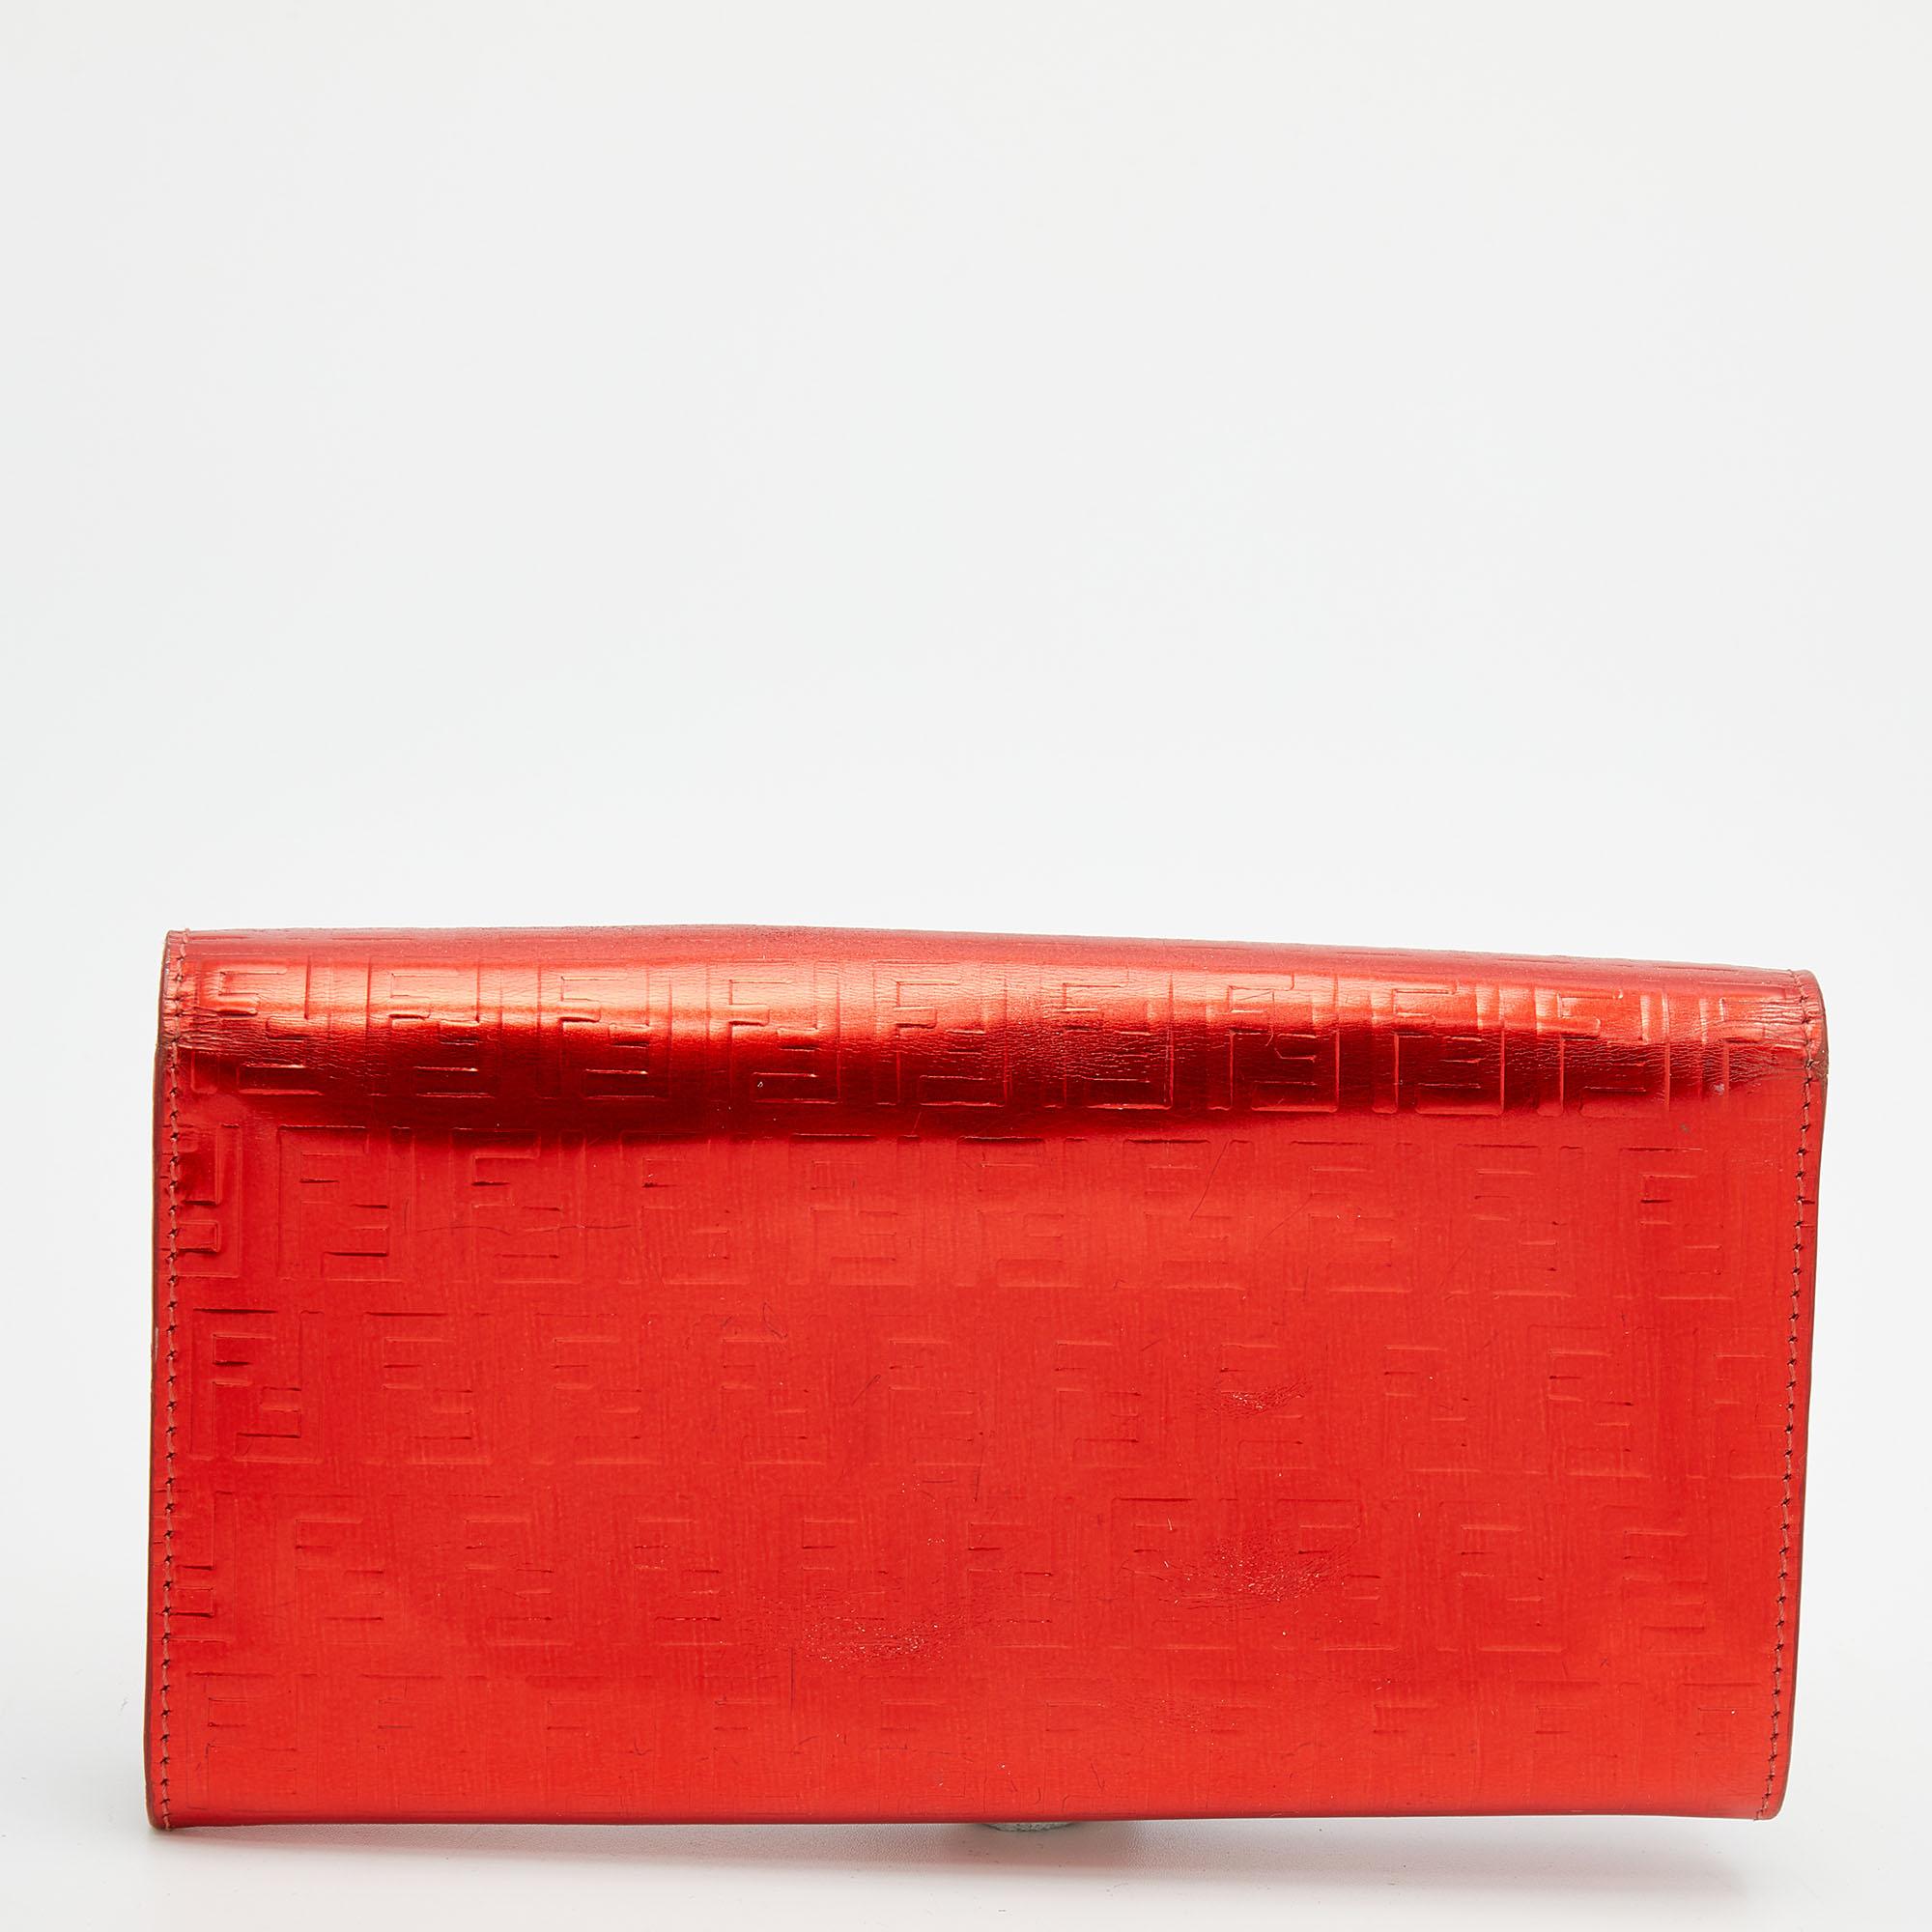 Ce portefeuille Fendi est l'hôte d'un certain nombre de détails fonctionnels. Avec un design remarquable, il est fabriqué à partir d'un cuir verni Zucchino rouge et présente une quincaillerie de couleur dorée. Son intérieur en toile et tissu enduit